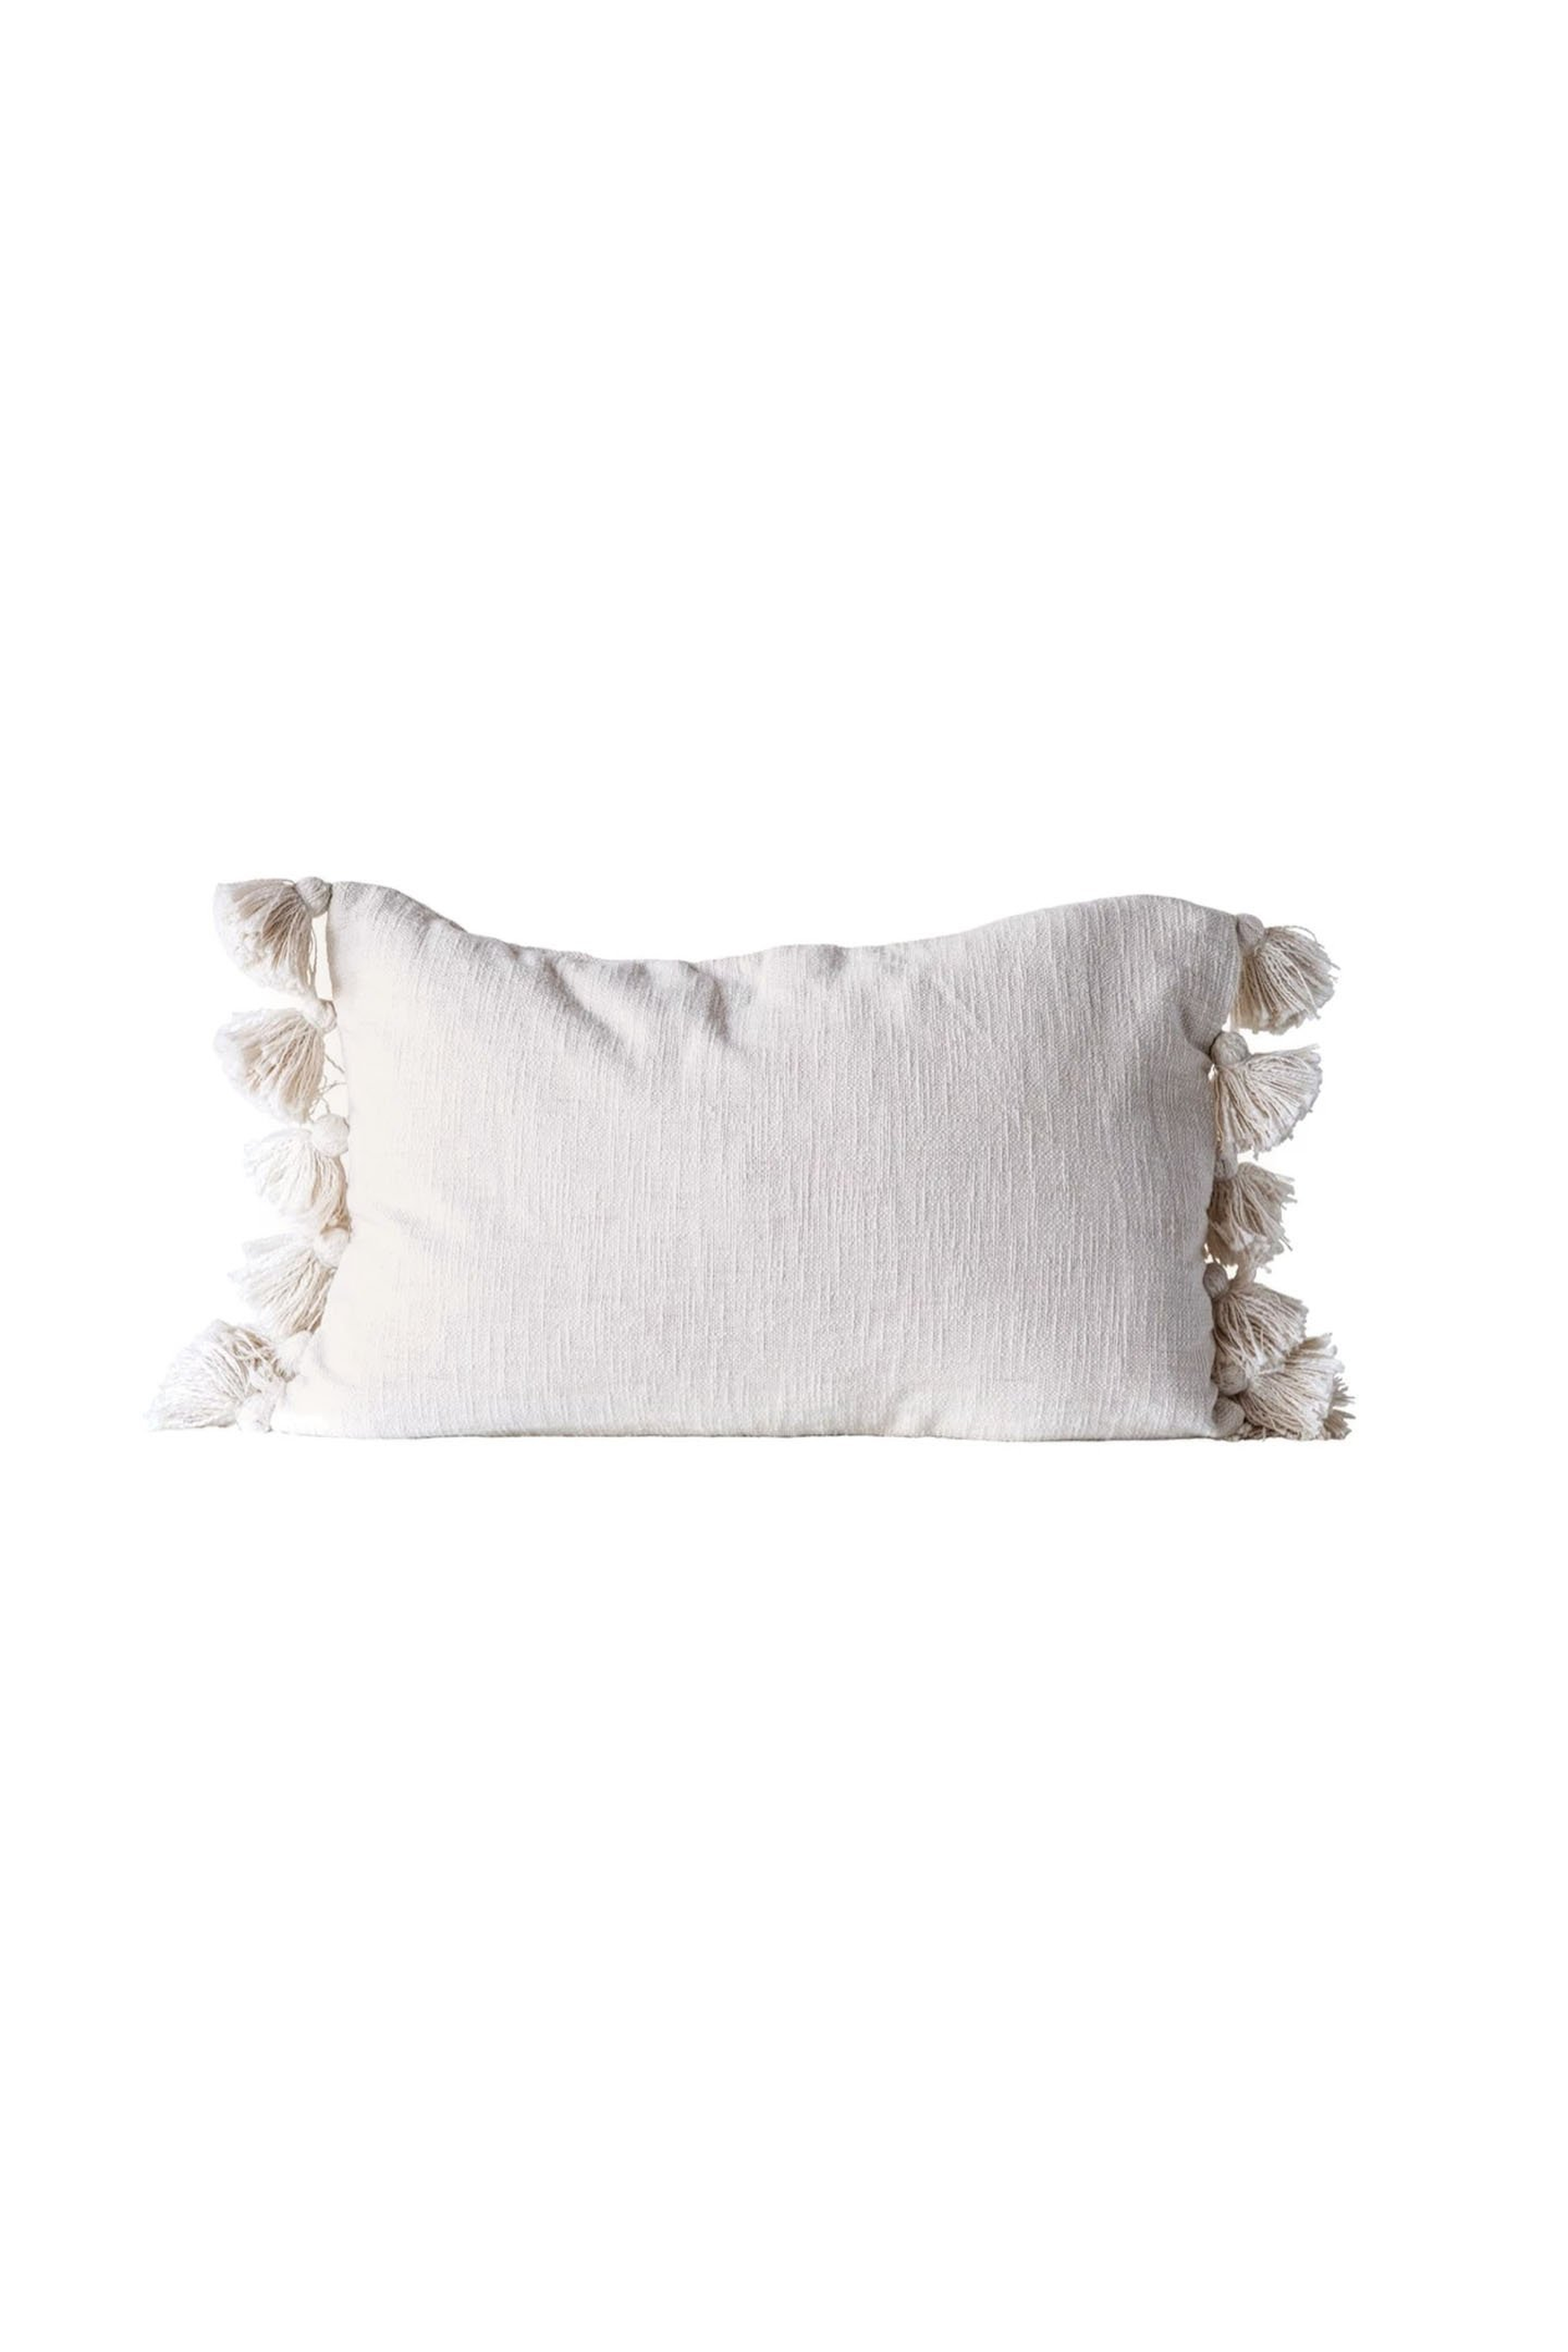 24" x 16" Neva Lumbar Pillow - Cove Goods